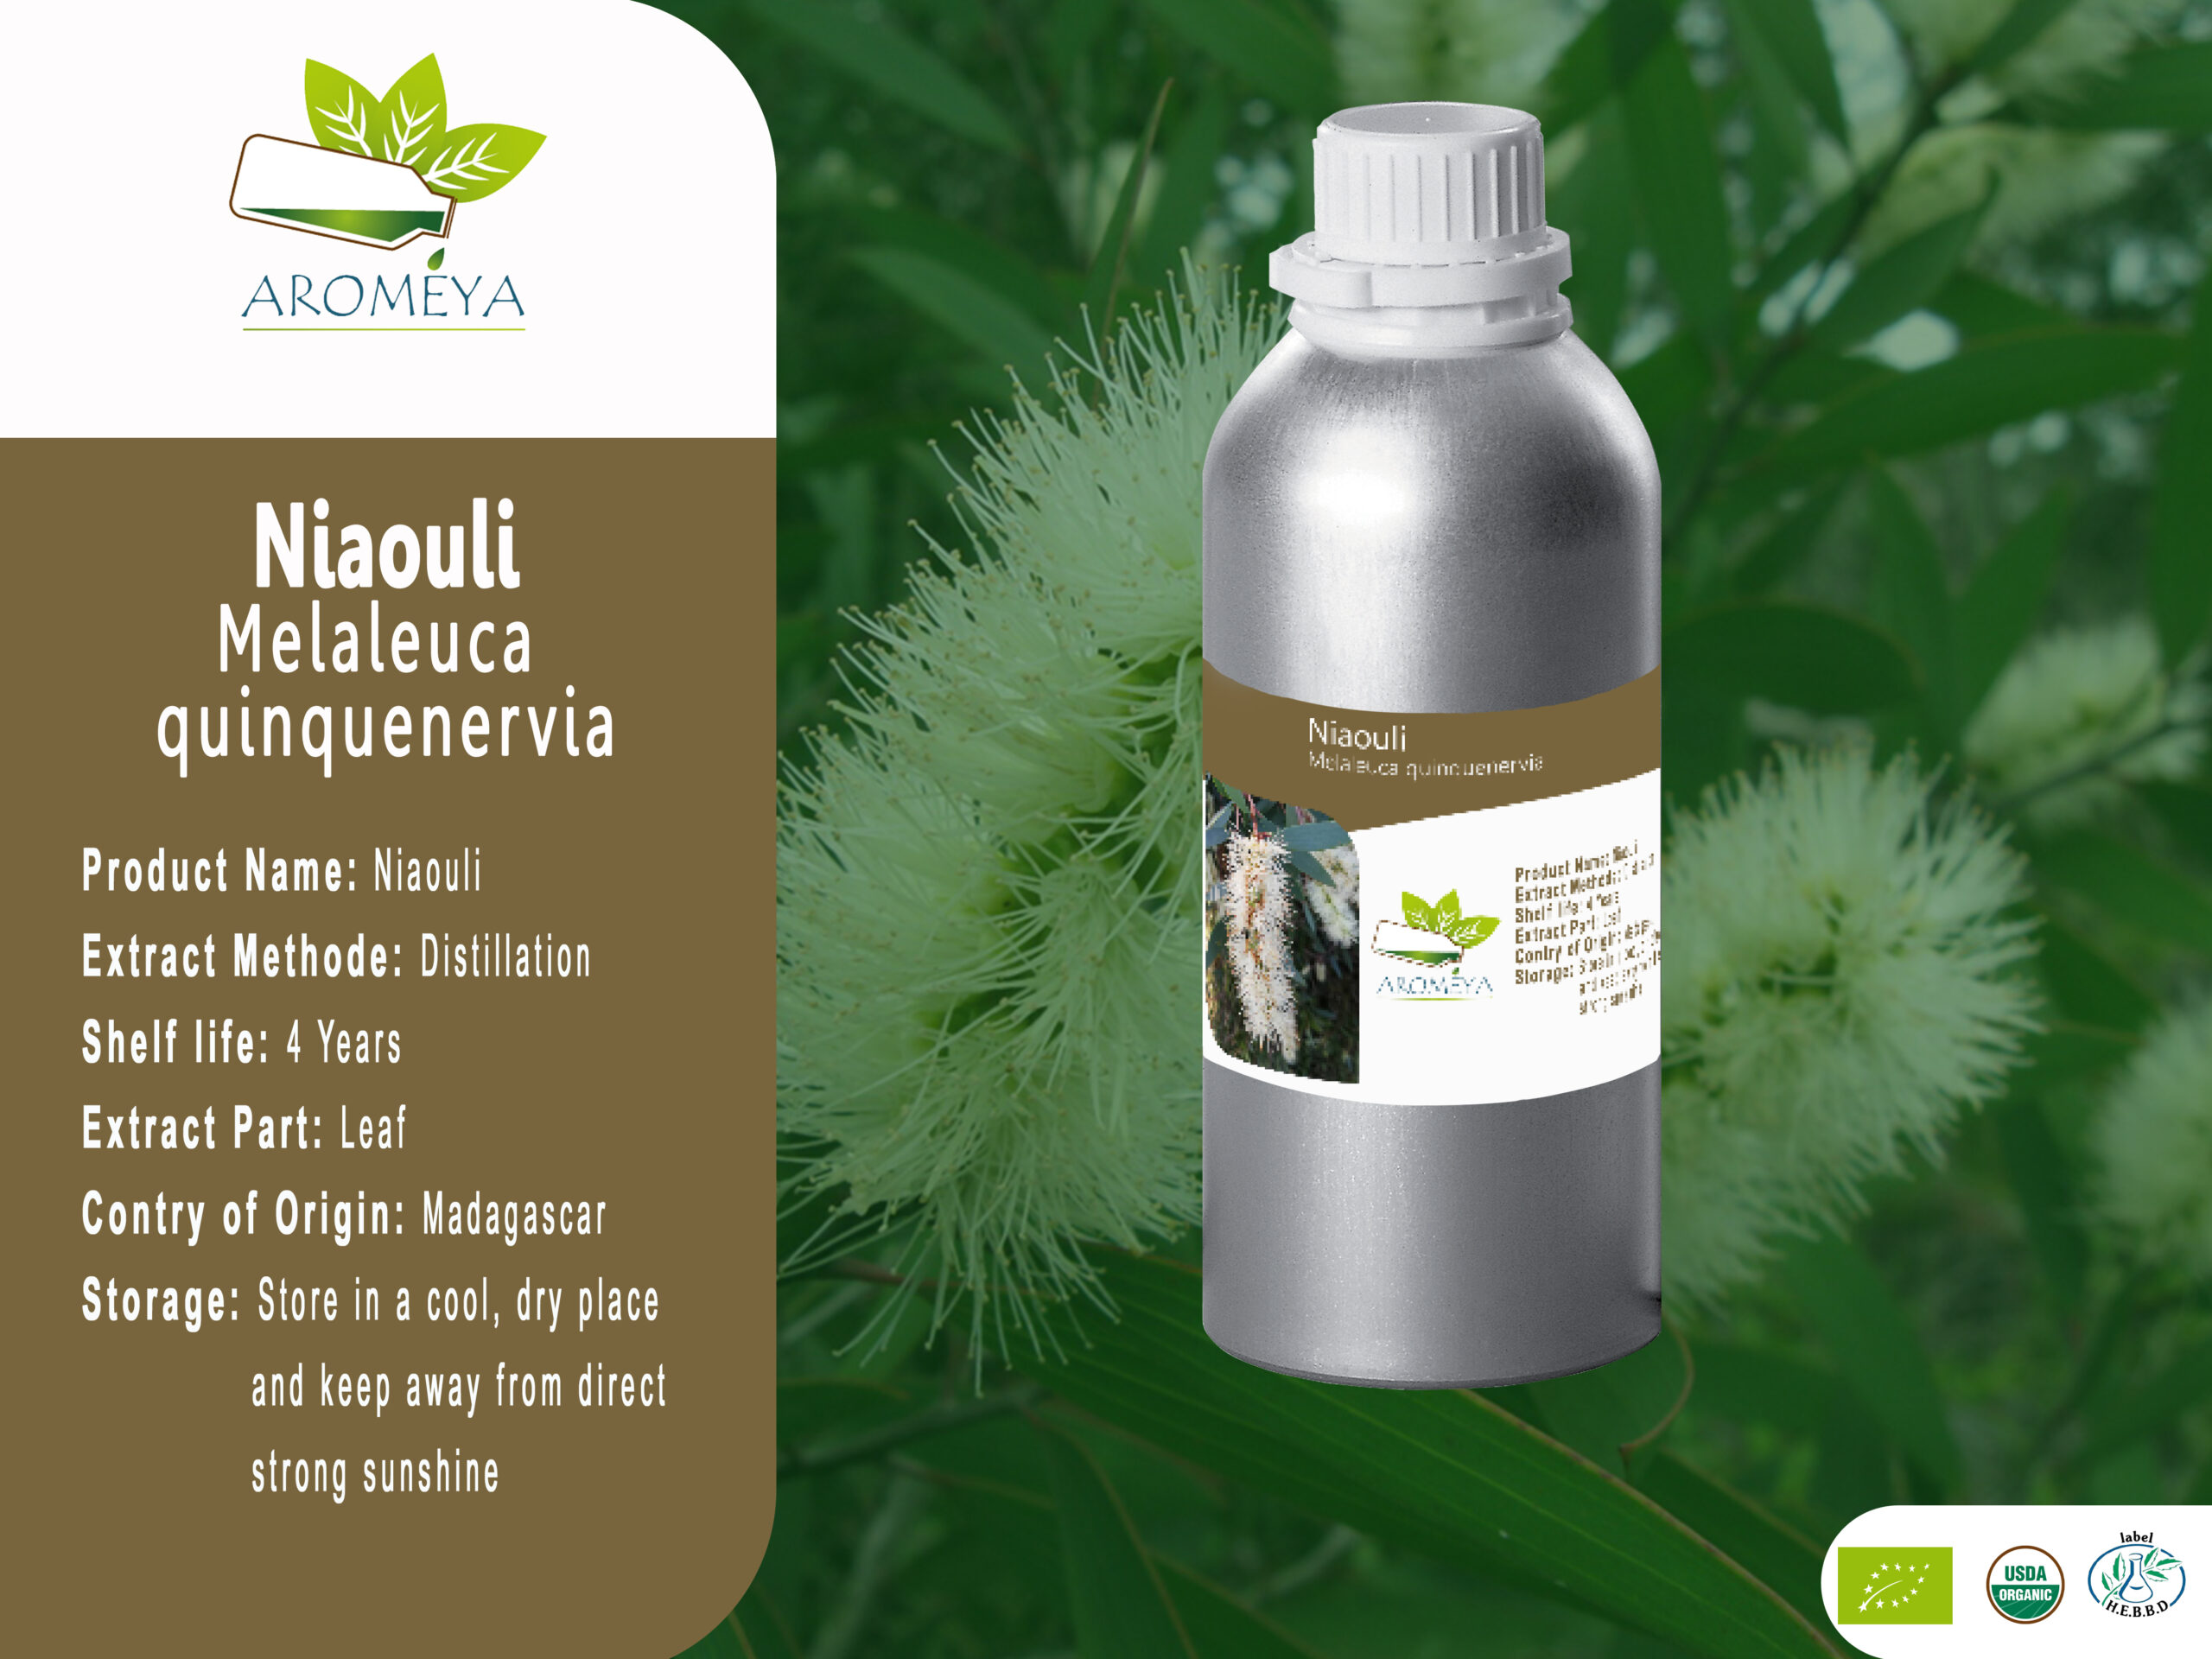 Huile essentielle de Niaouli // Niaouli essential oil from Madagascar